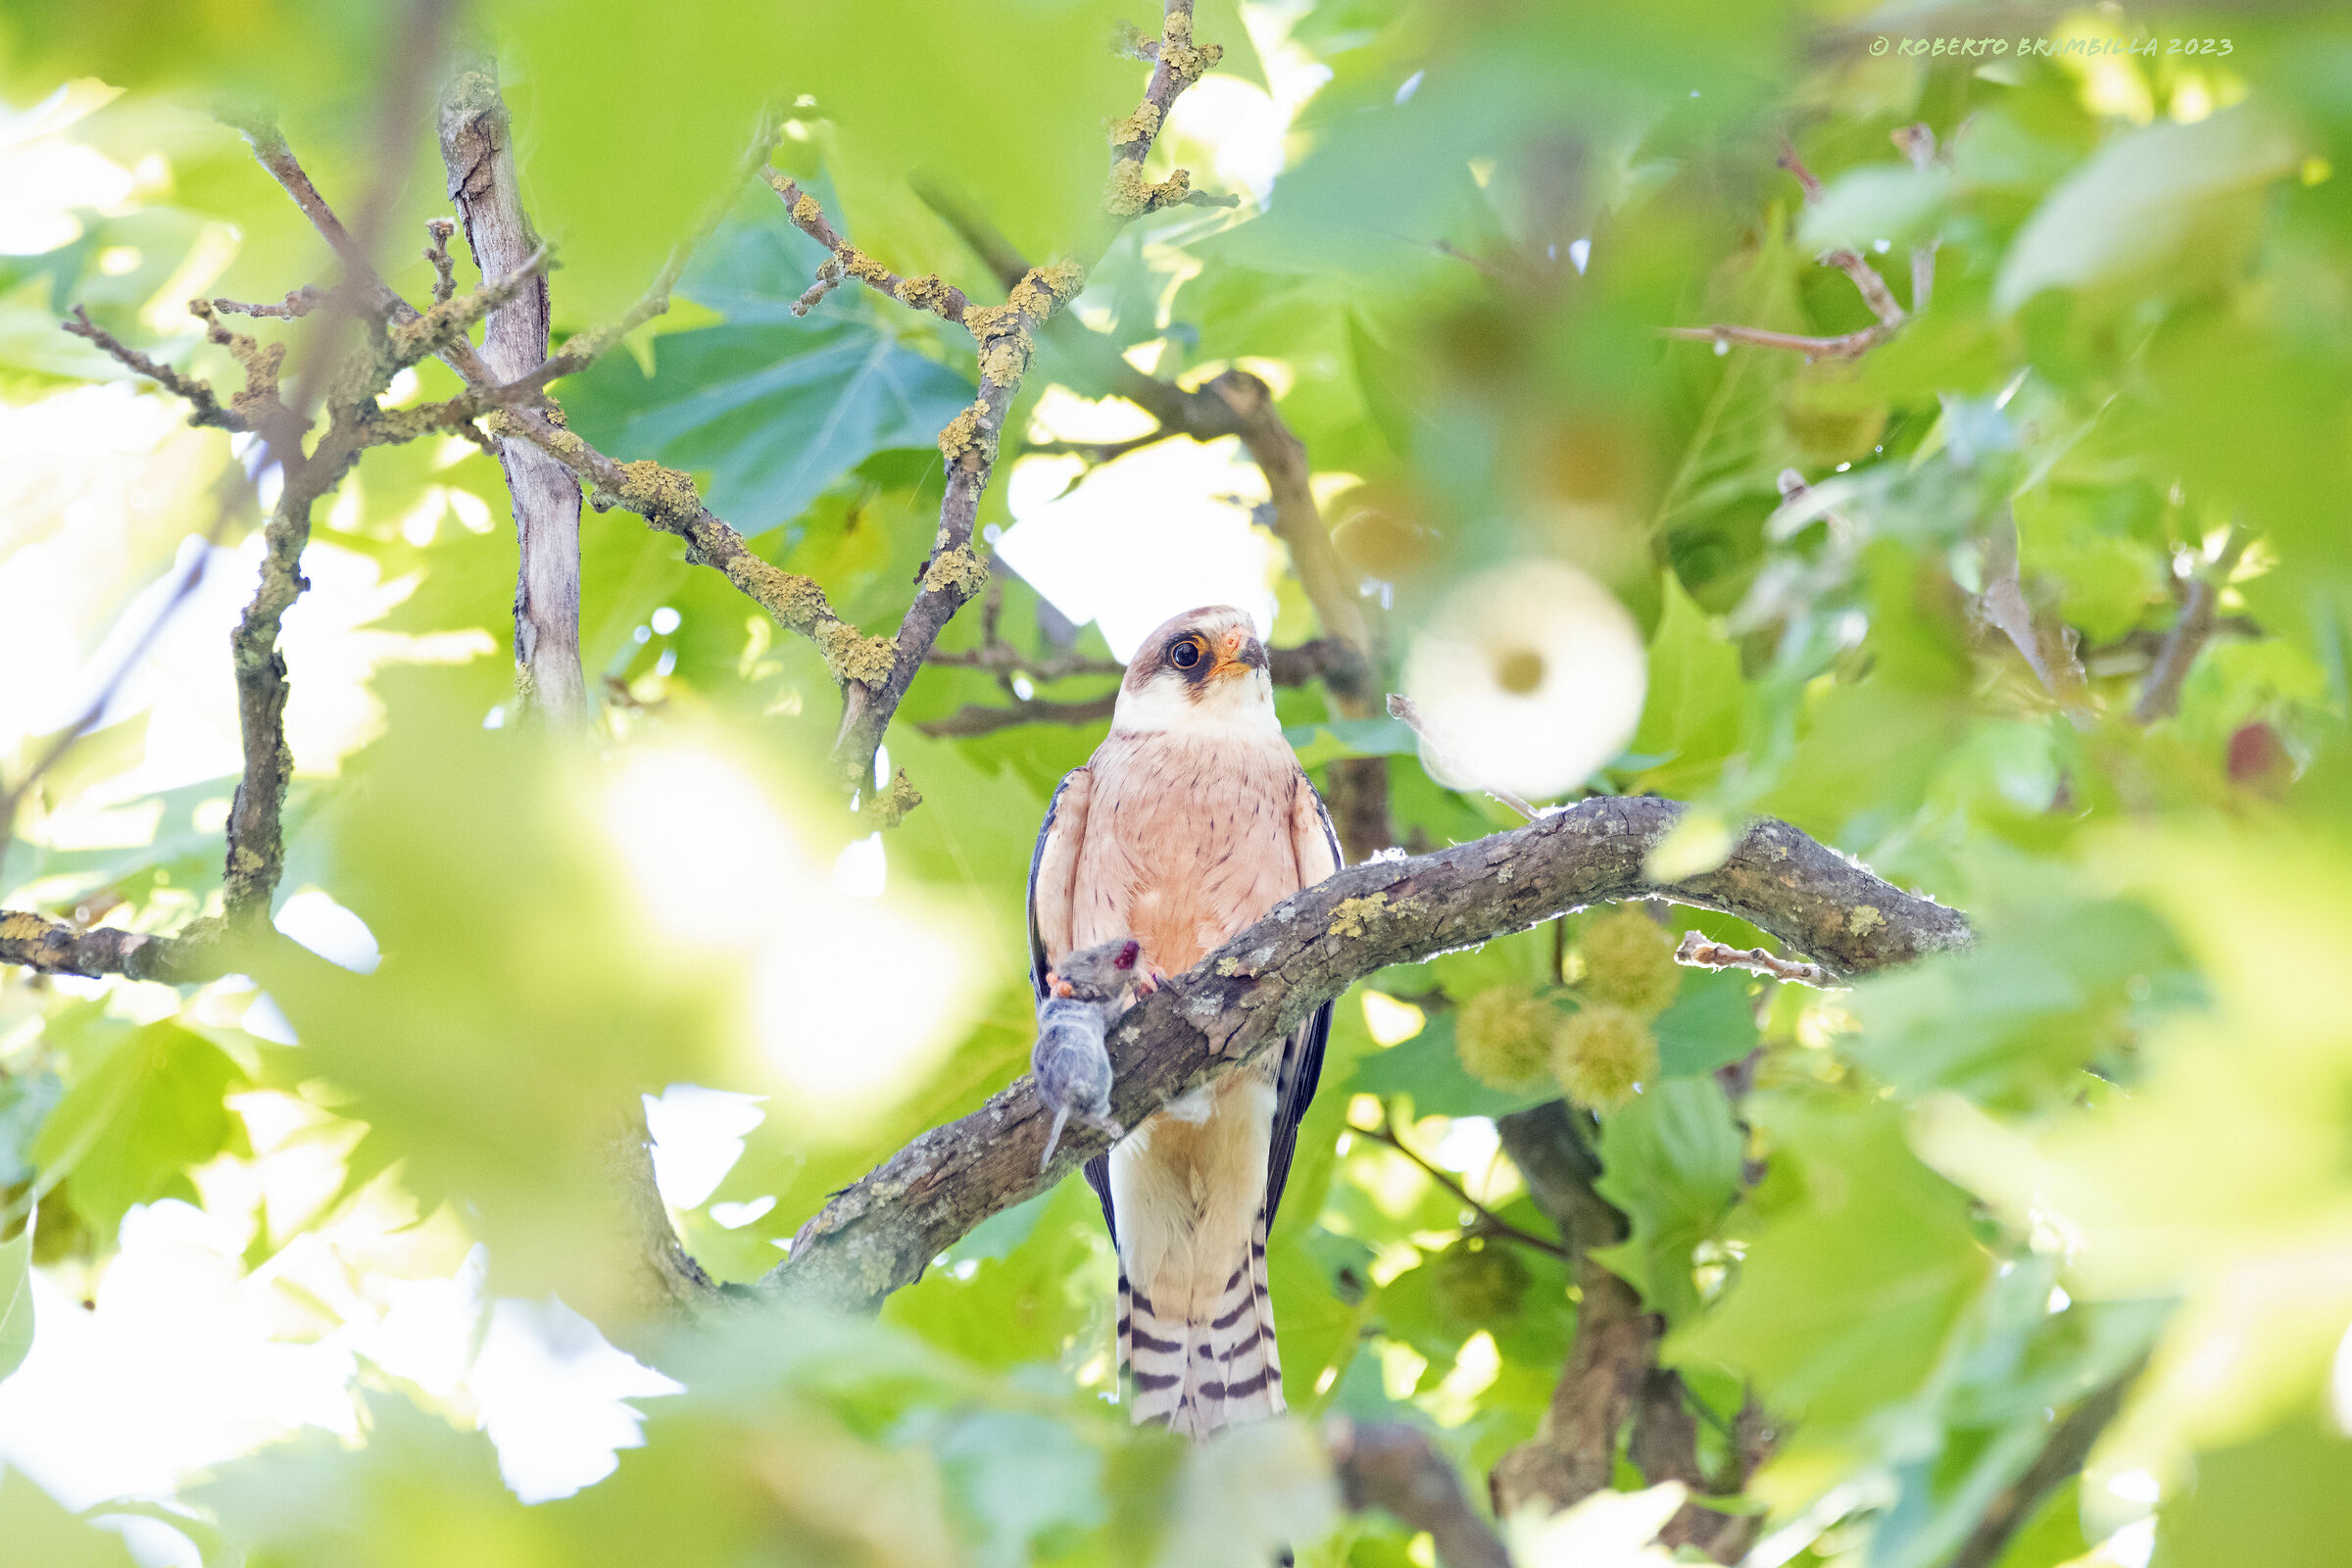 Cuckoo Falcon with prey...